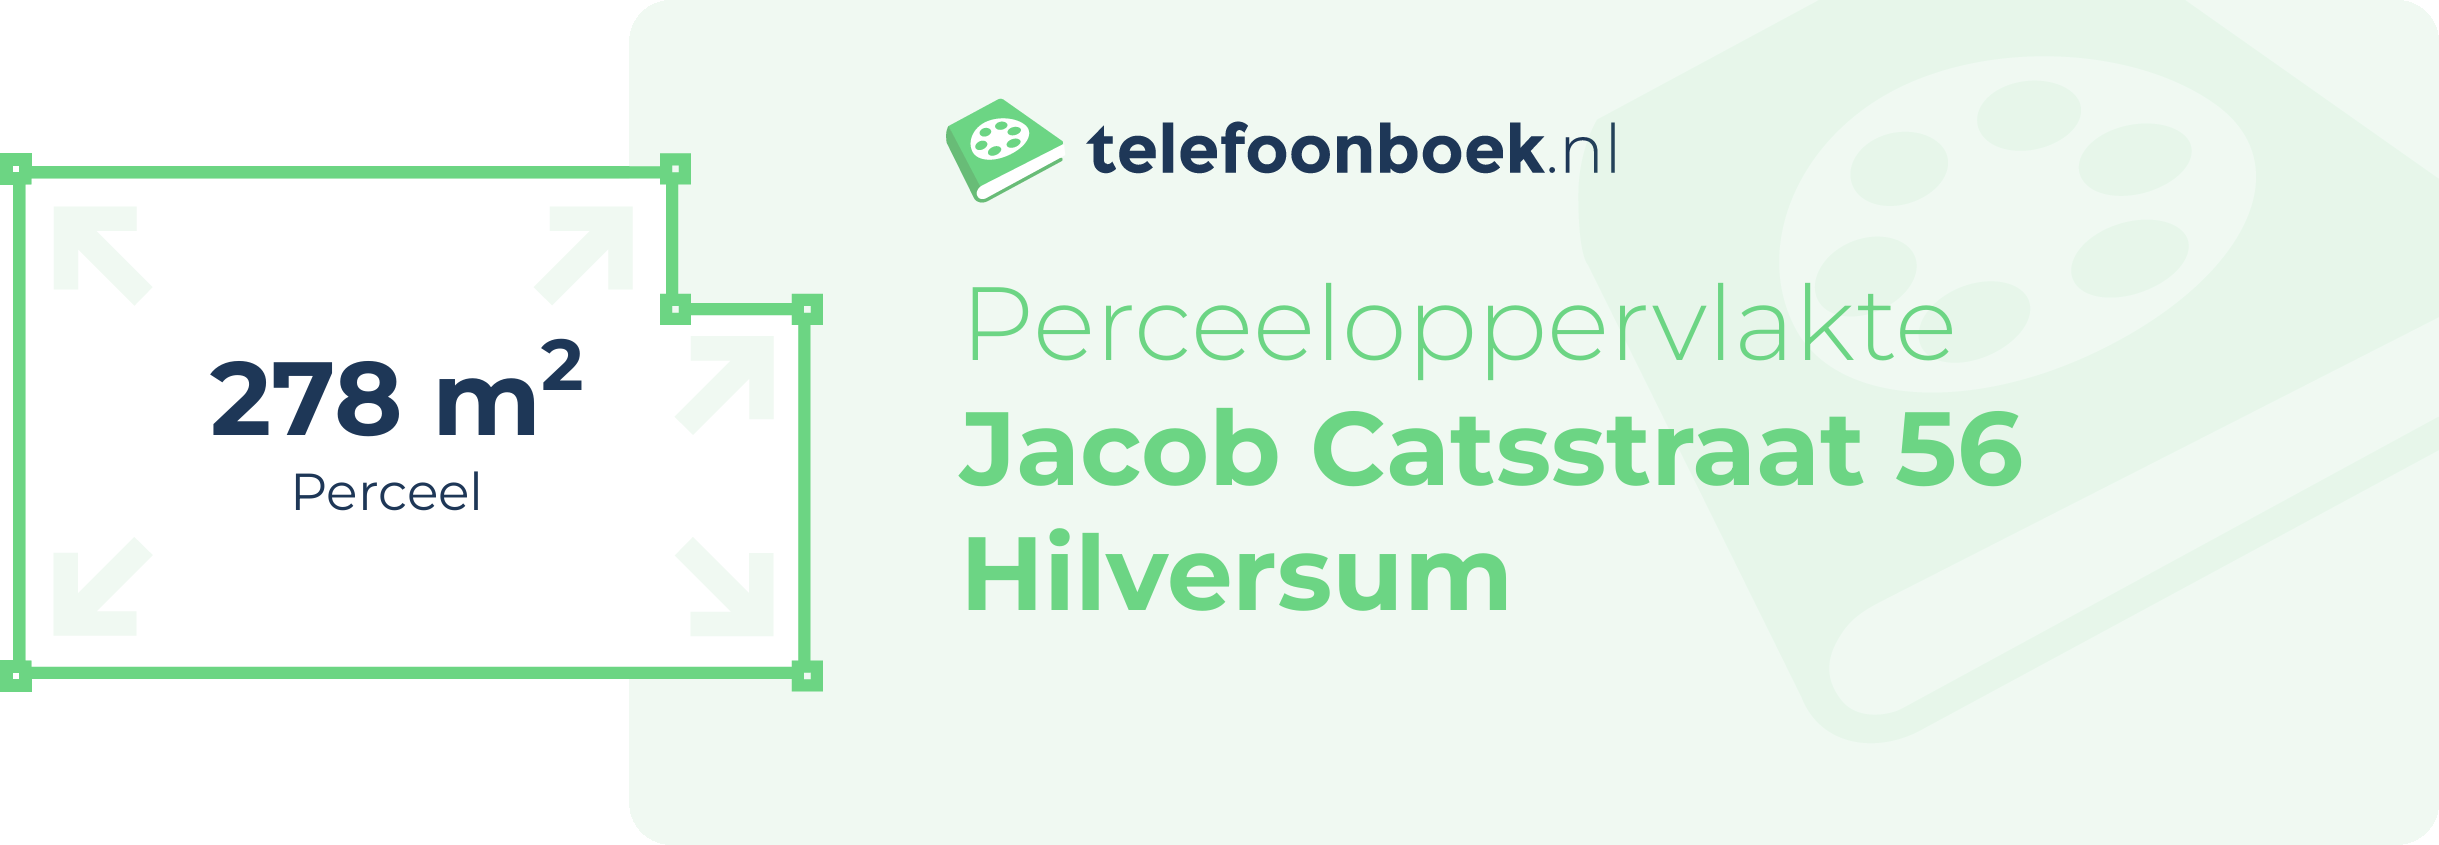 Perceeloppervlakte Jacob Catsstraat 56 Hilversum